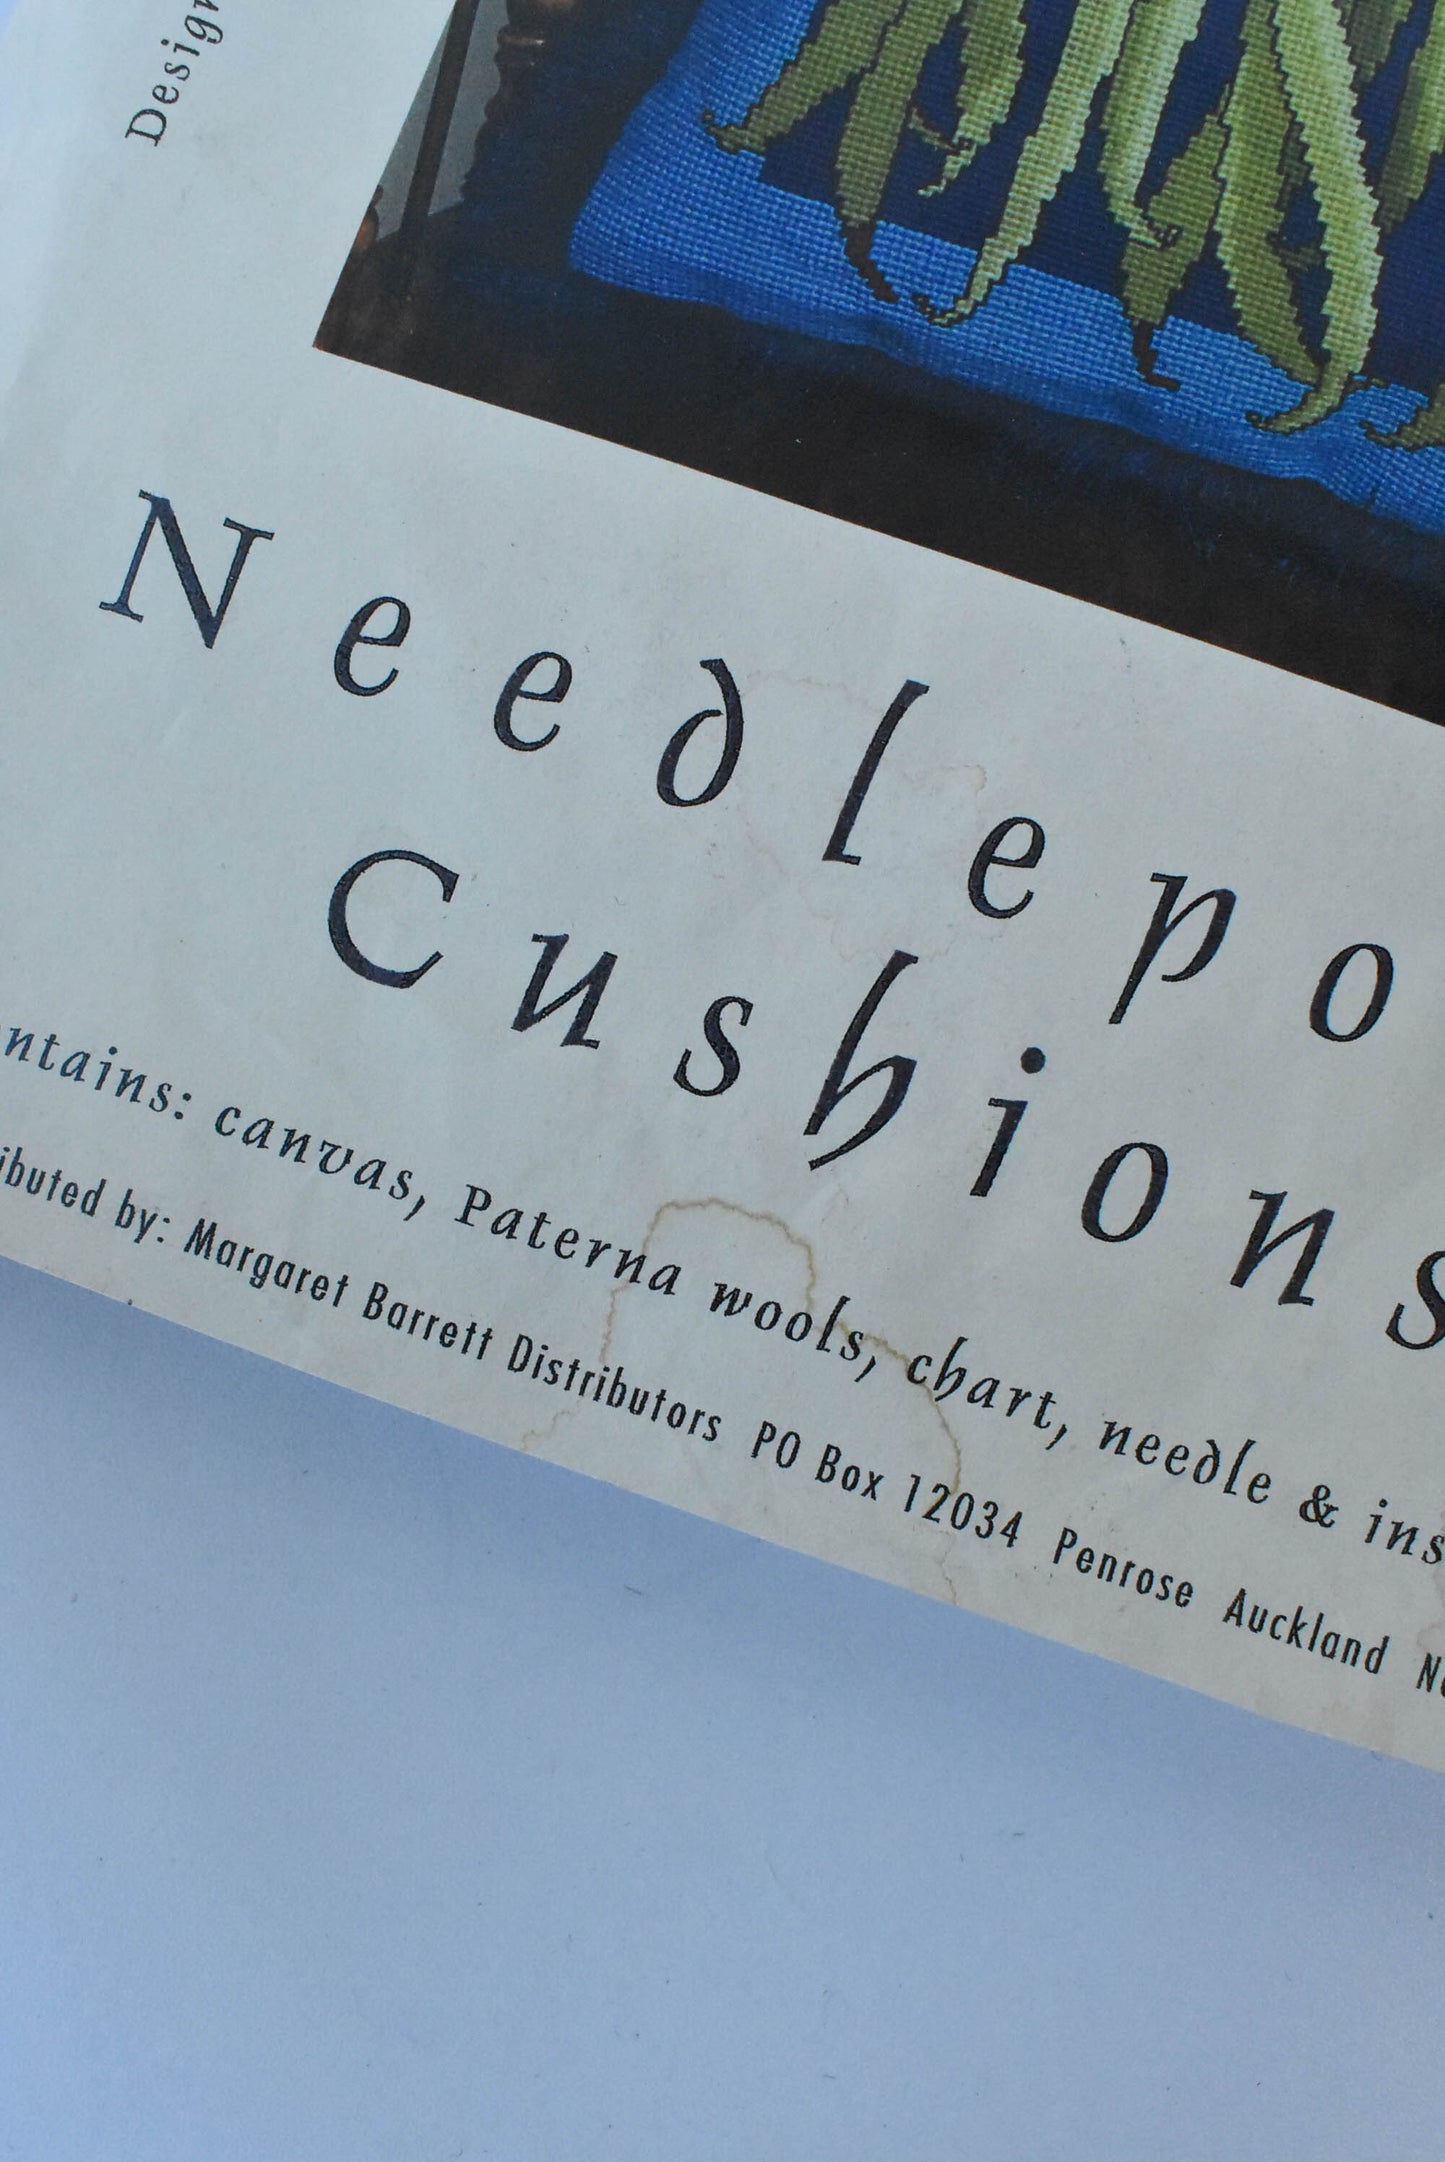 Needlepoint cushion kit